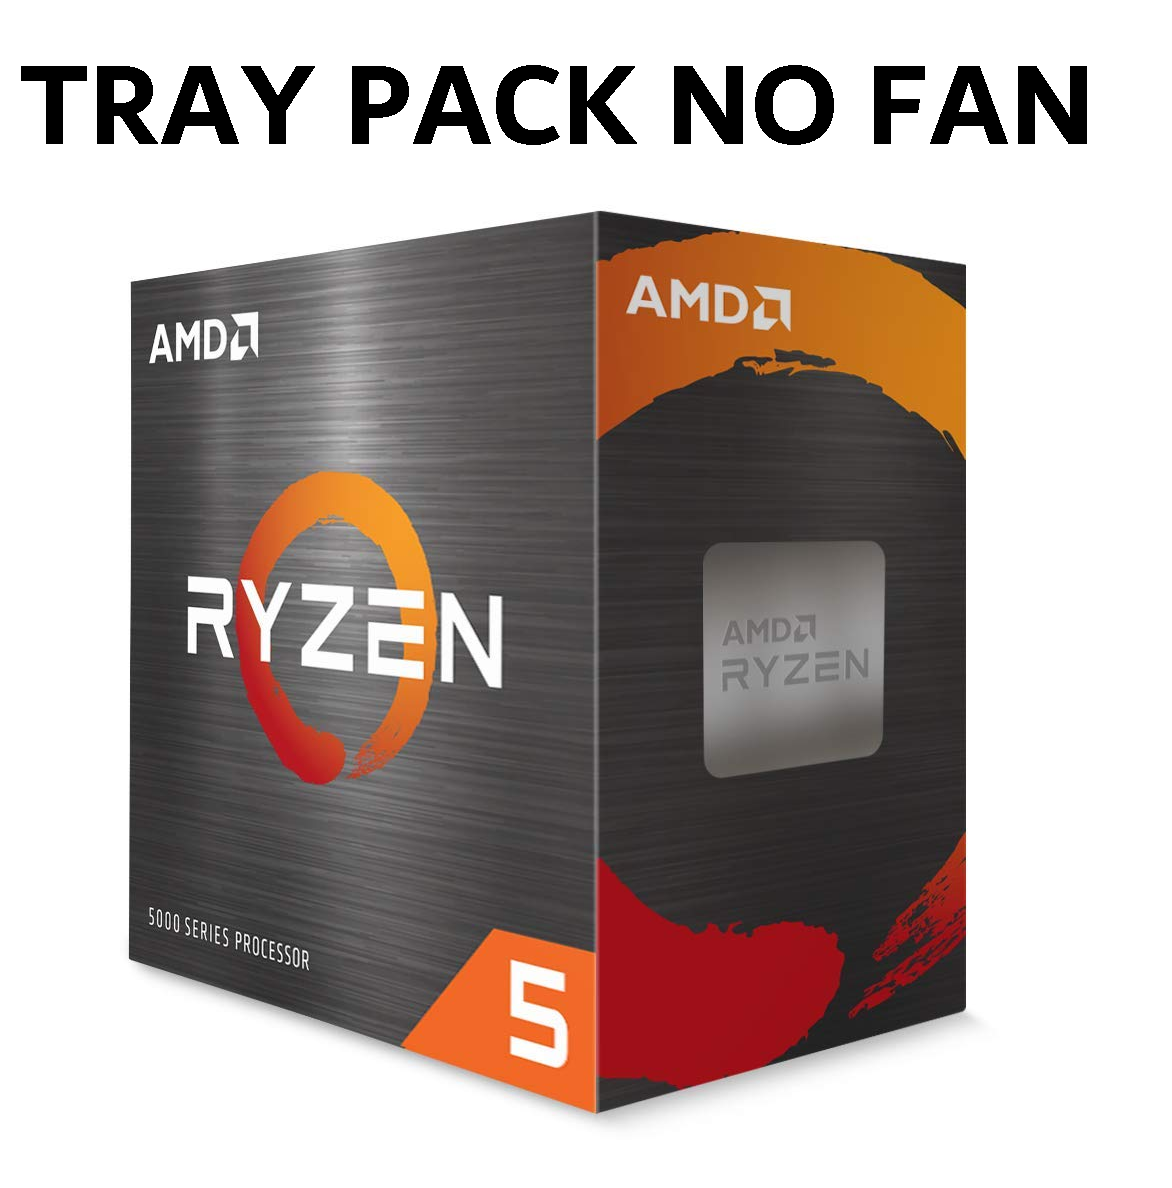 (Clamshell Or Installed On MBs) AMD Ryzen 5 1600 “TRAY”, YD1600BBM6IAE 6 Core/12 Threads AM4 CPU, No Fan, 1YW (AMDCPU)(AMDBOX)(TRAY-P)